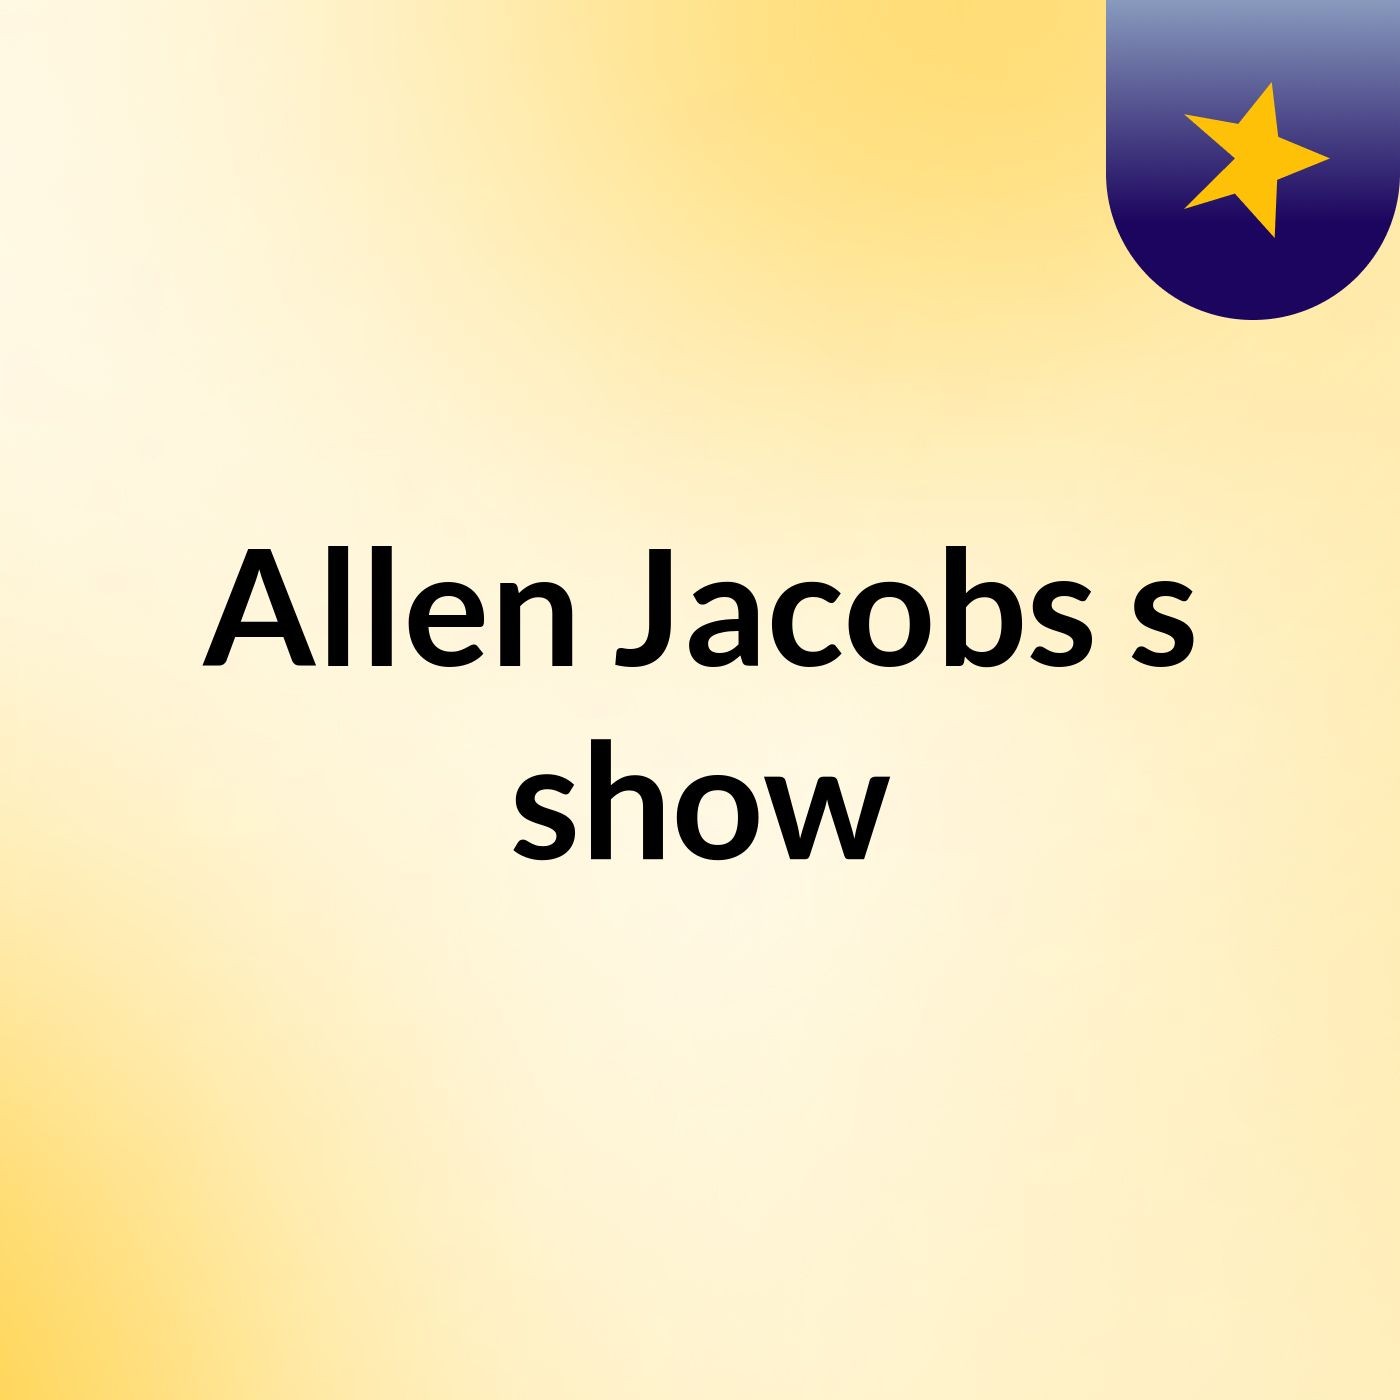 Allen Jacobs's show